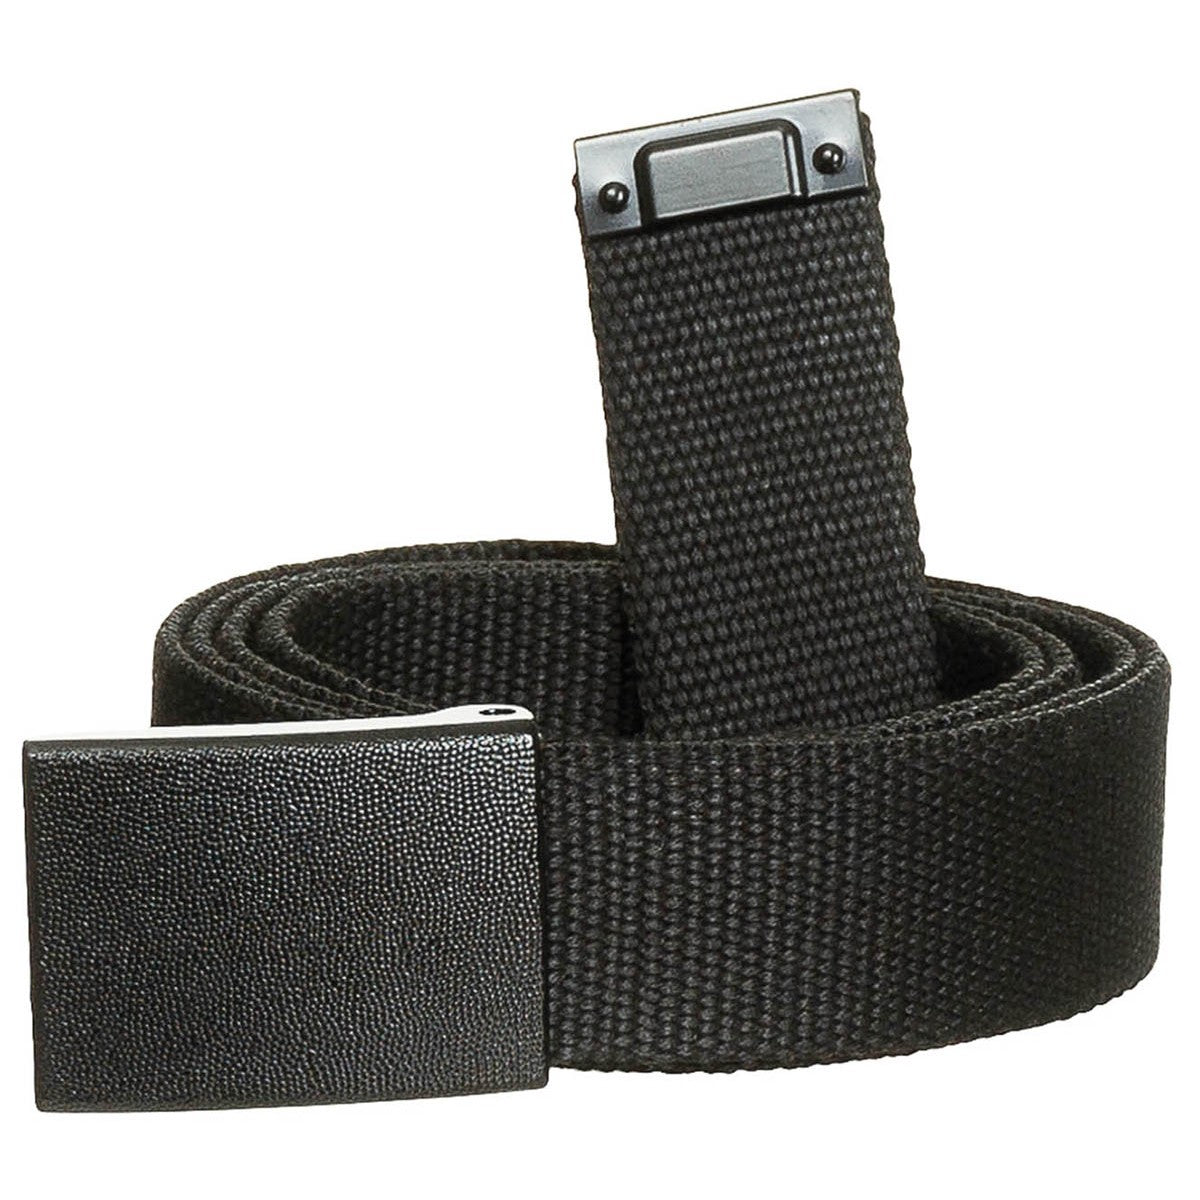 Cintura per pantaloni in bianco e nero, nera, circa 3 cm, con chiusura a cassetta